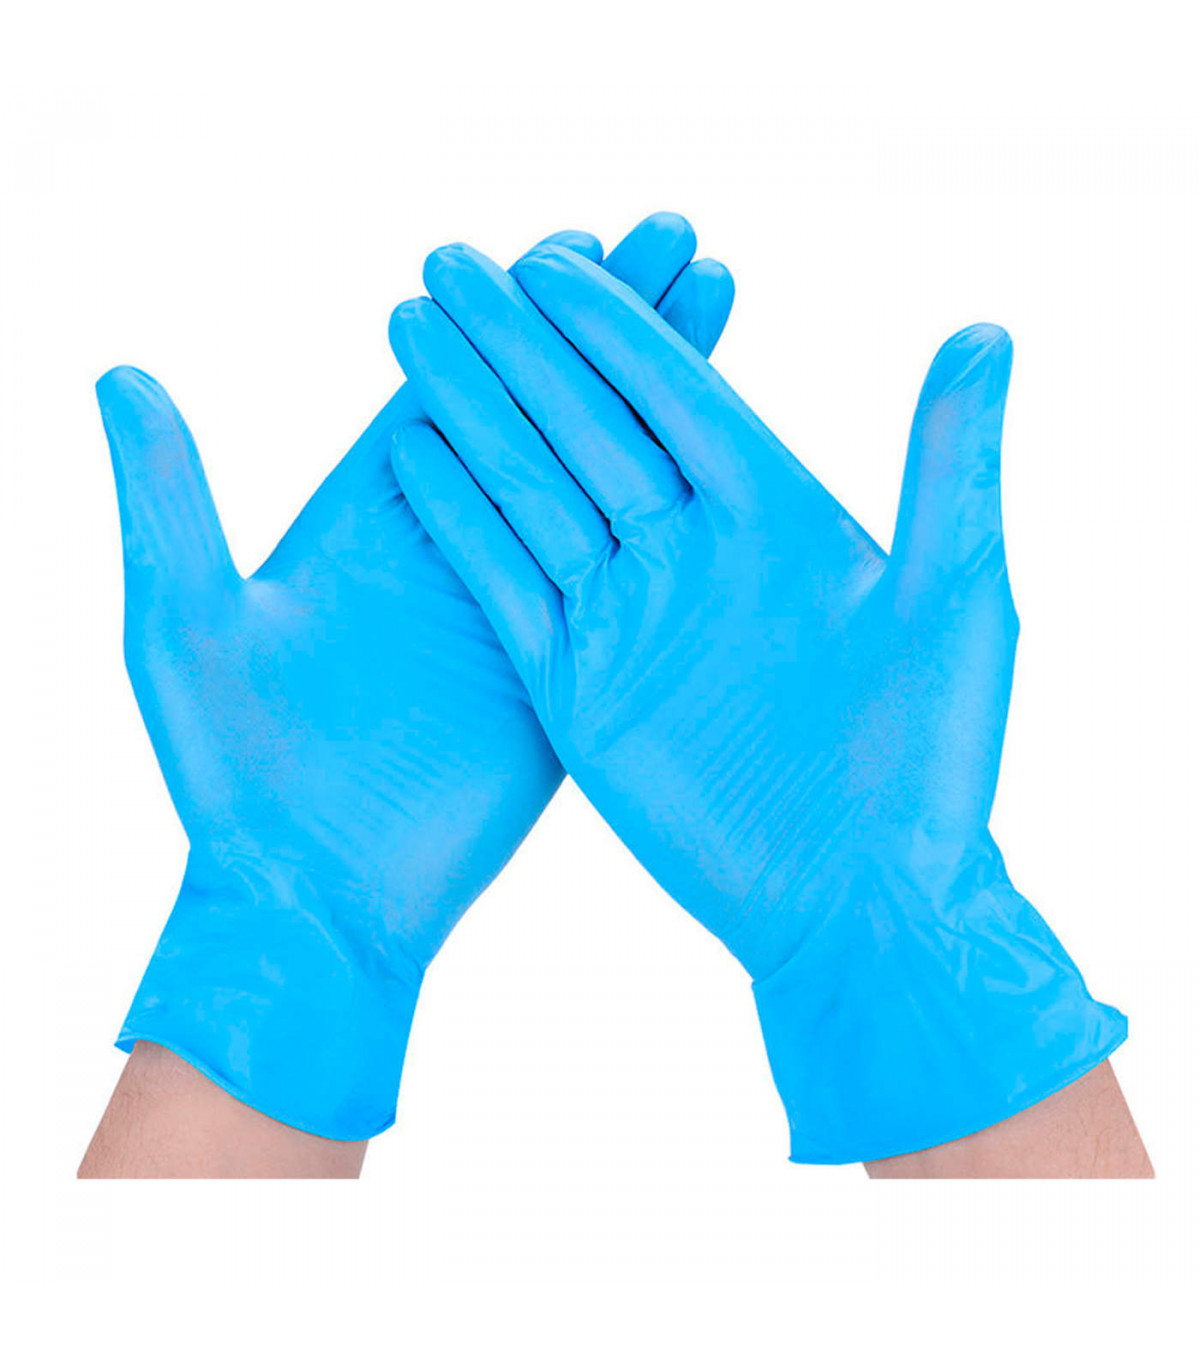 Guantes de nitrilo, 100 unidades, 1000 unidades, desechables, color azul,  tallas S/M/L/XL, sin látex, sin polvo.